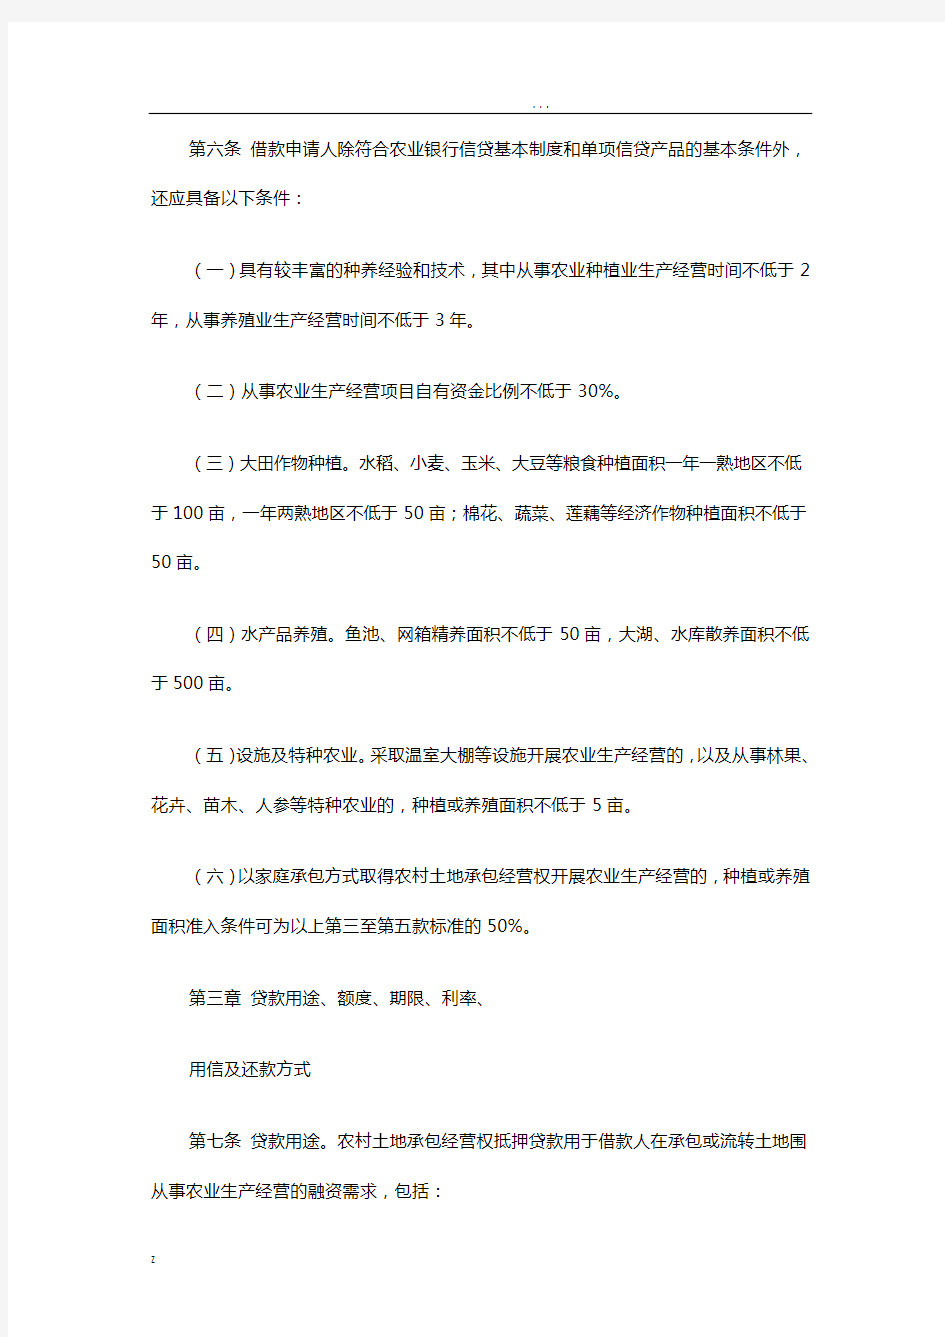 中国农业银行农村土地承包经营权抵押贷款管理办法